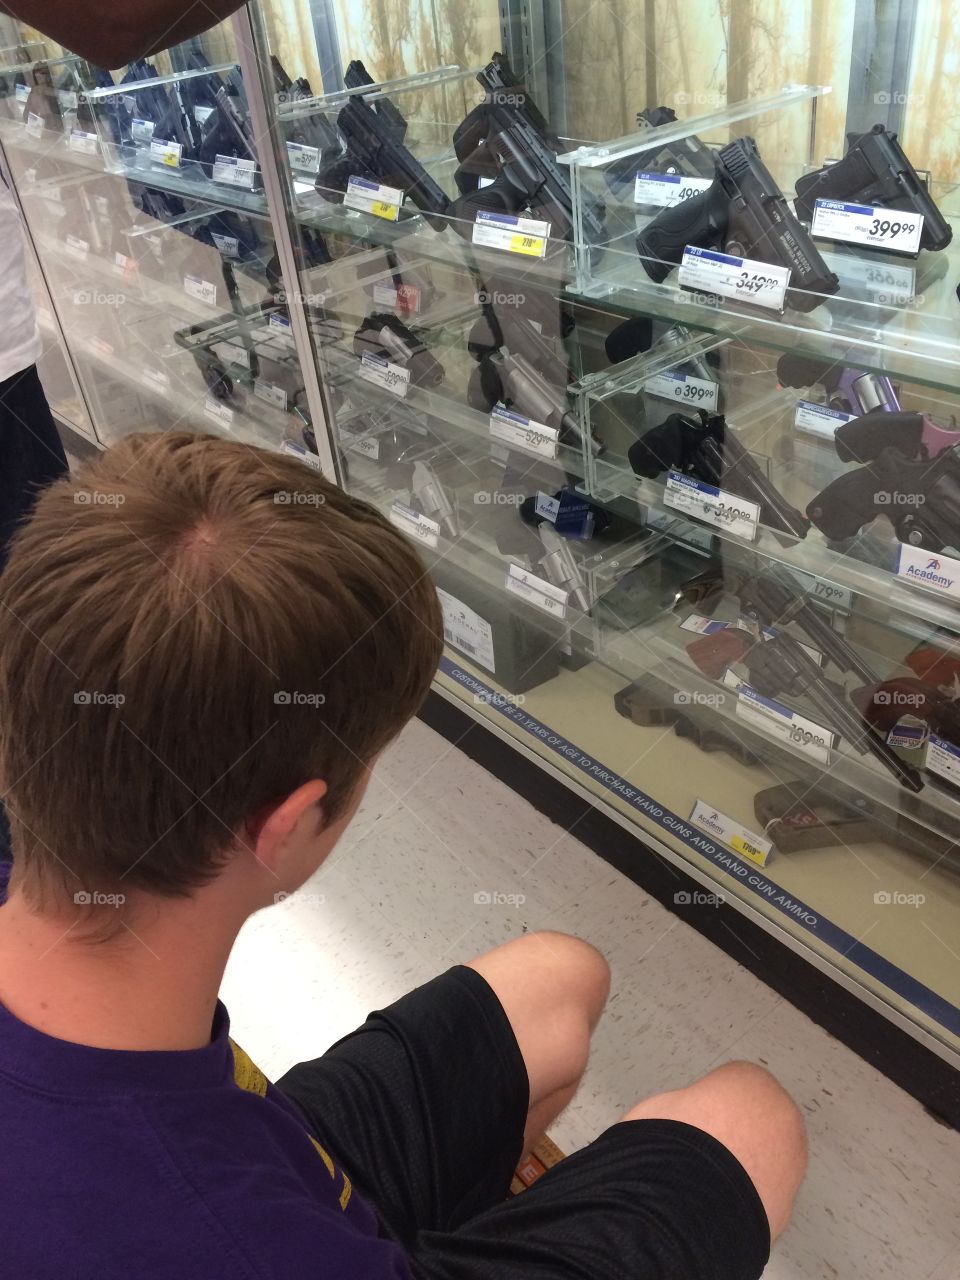 Firearm shopping